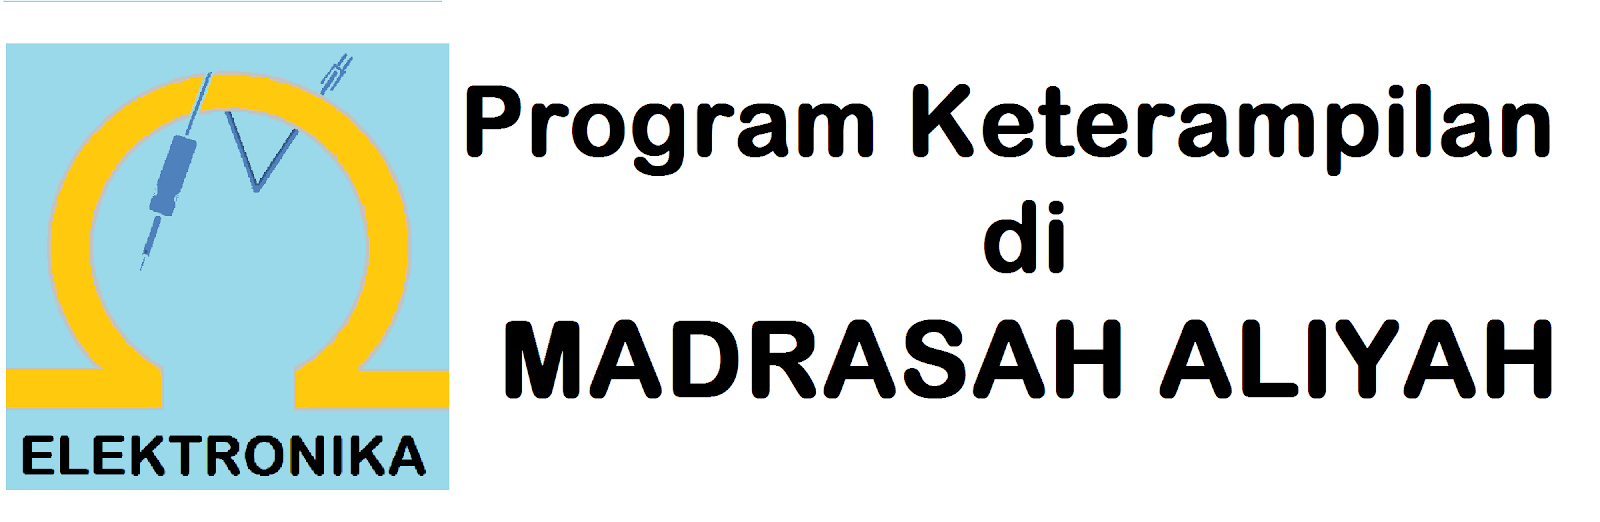 Program Keterampilan Madrasah